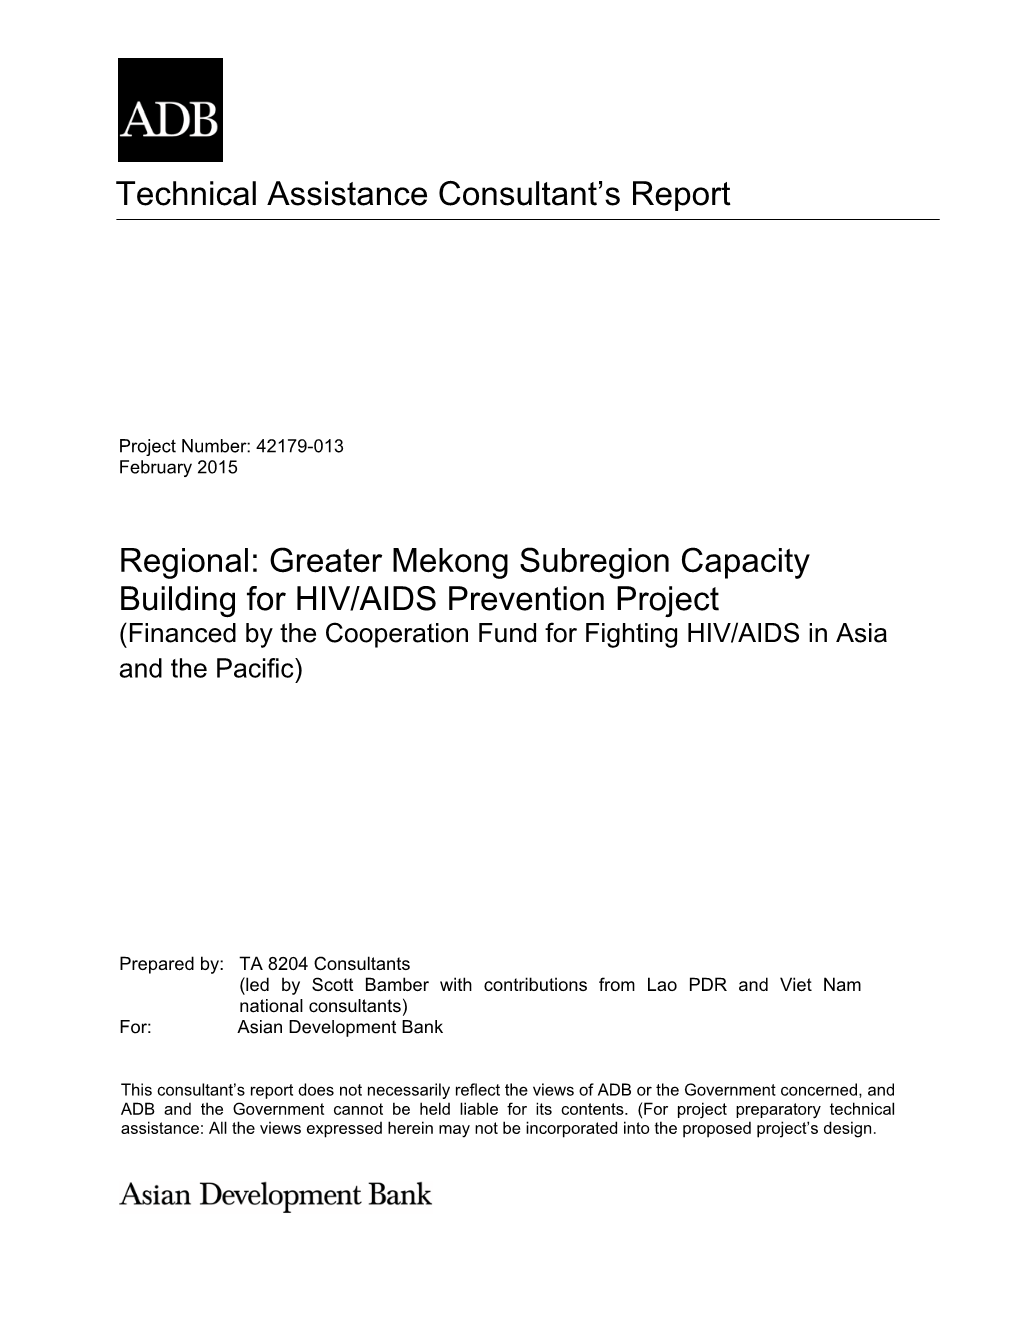 42179-013: Consultant's Report